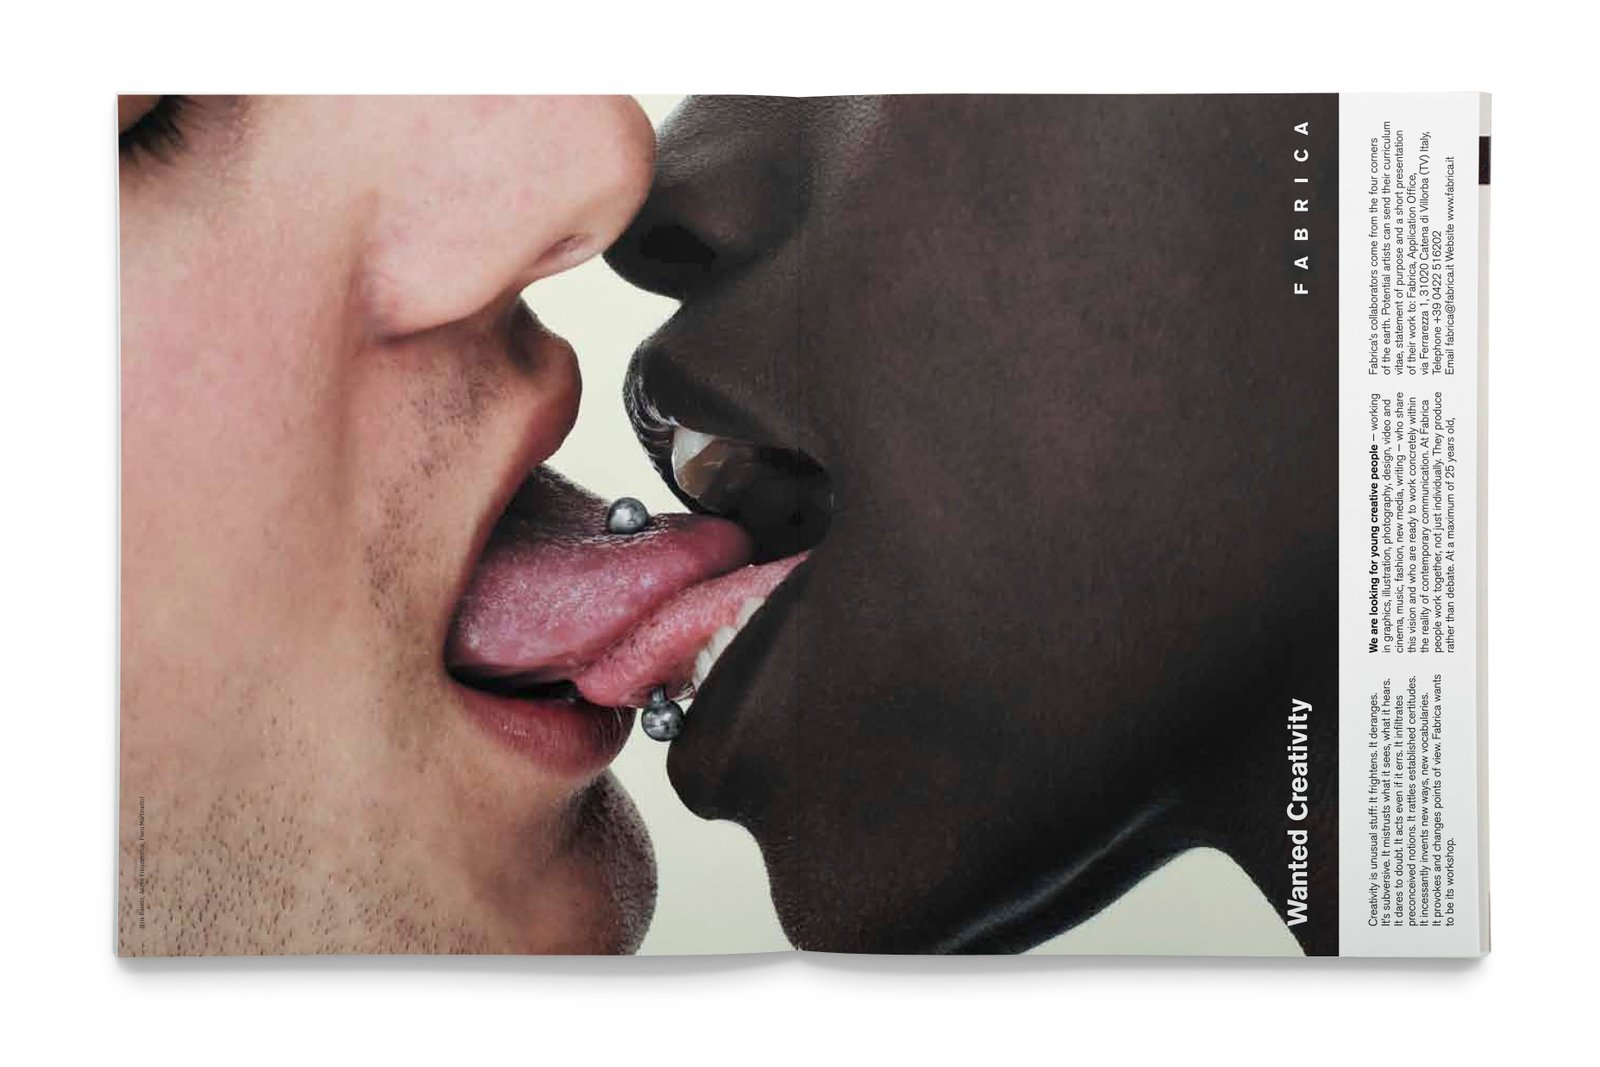 Pix of modern human tongue virgin sex